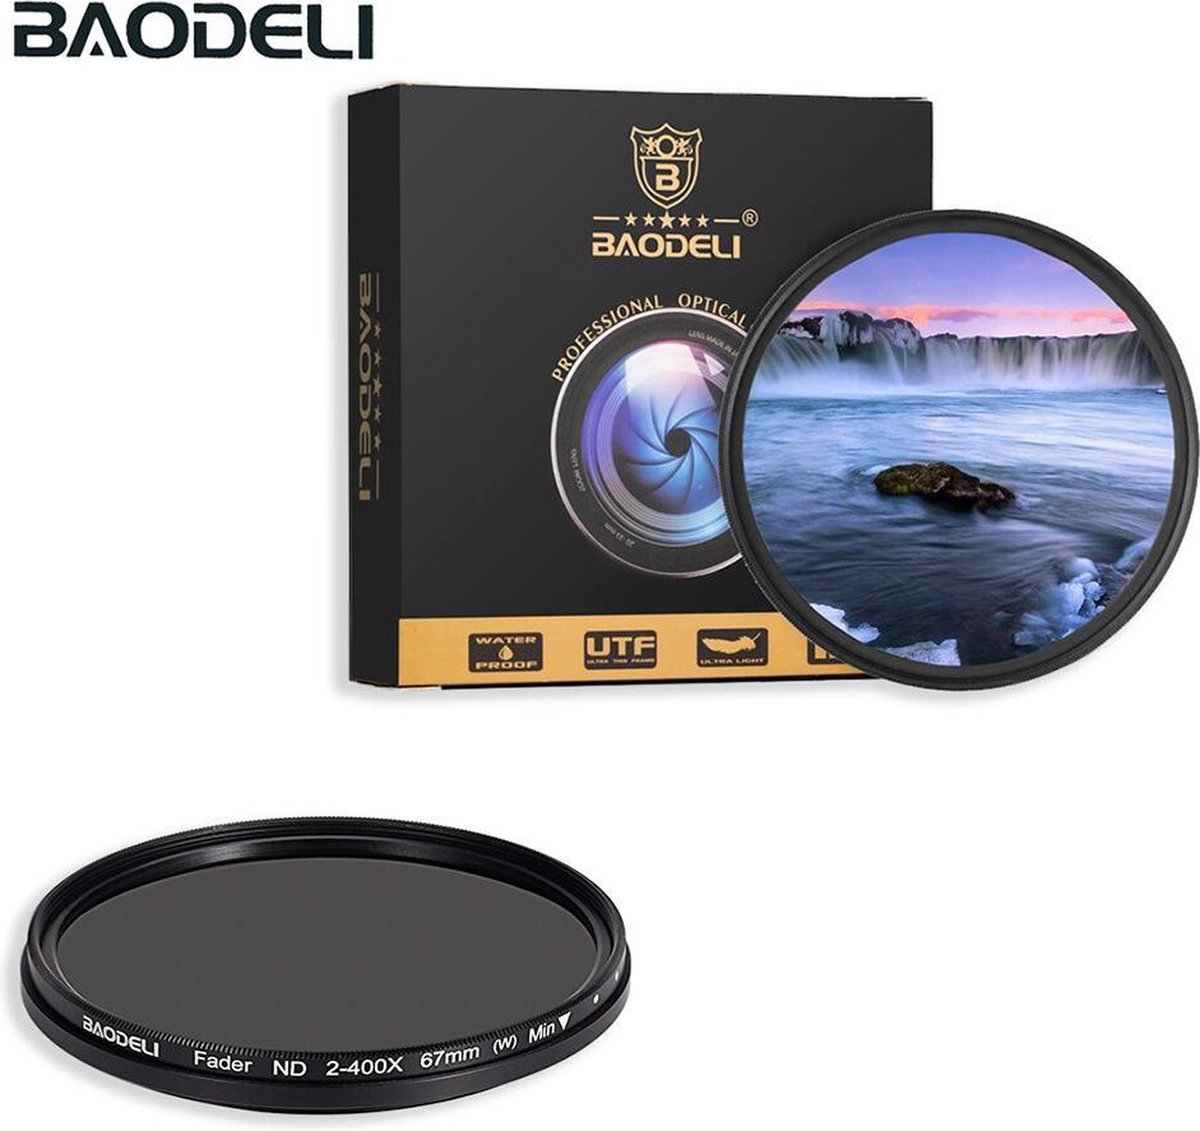 Baodeli 58mm variabele ND fader ND2-ND400 filter grijsfilter